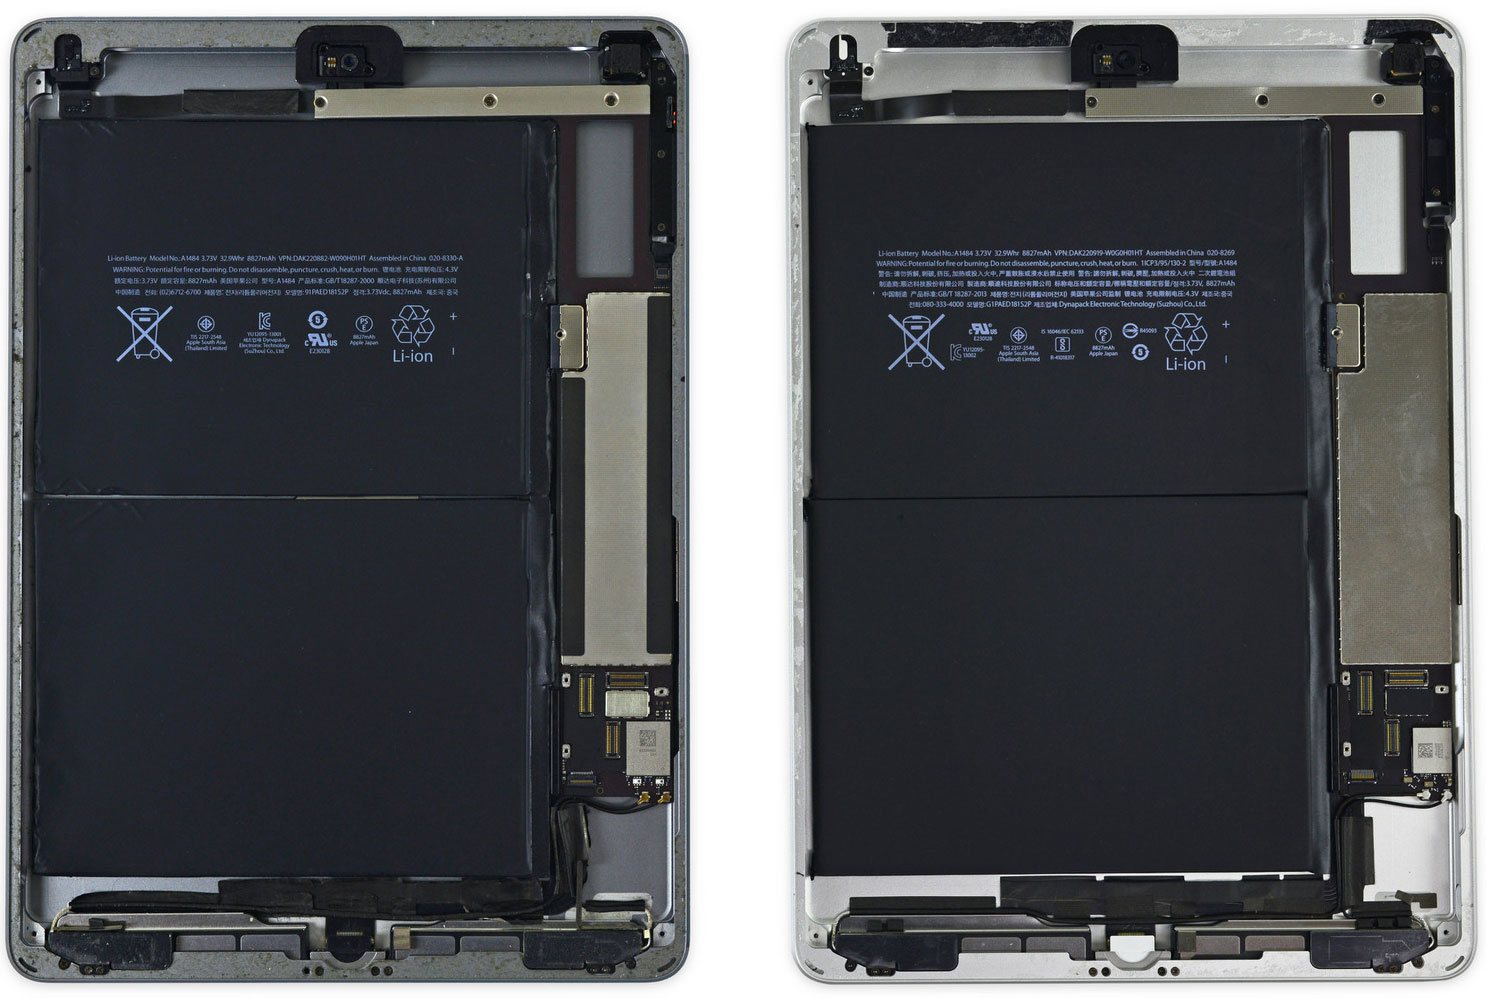 Comparación del iPad Air 1 y nuevo iPad con A9 por dentro